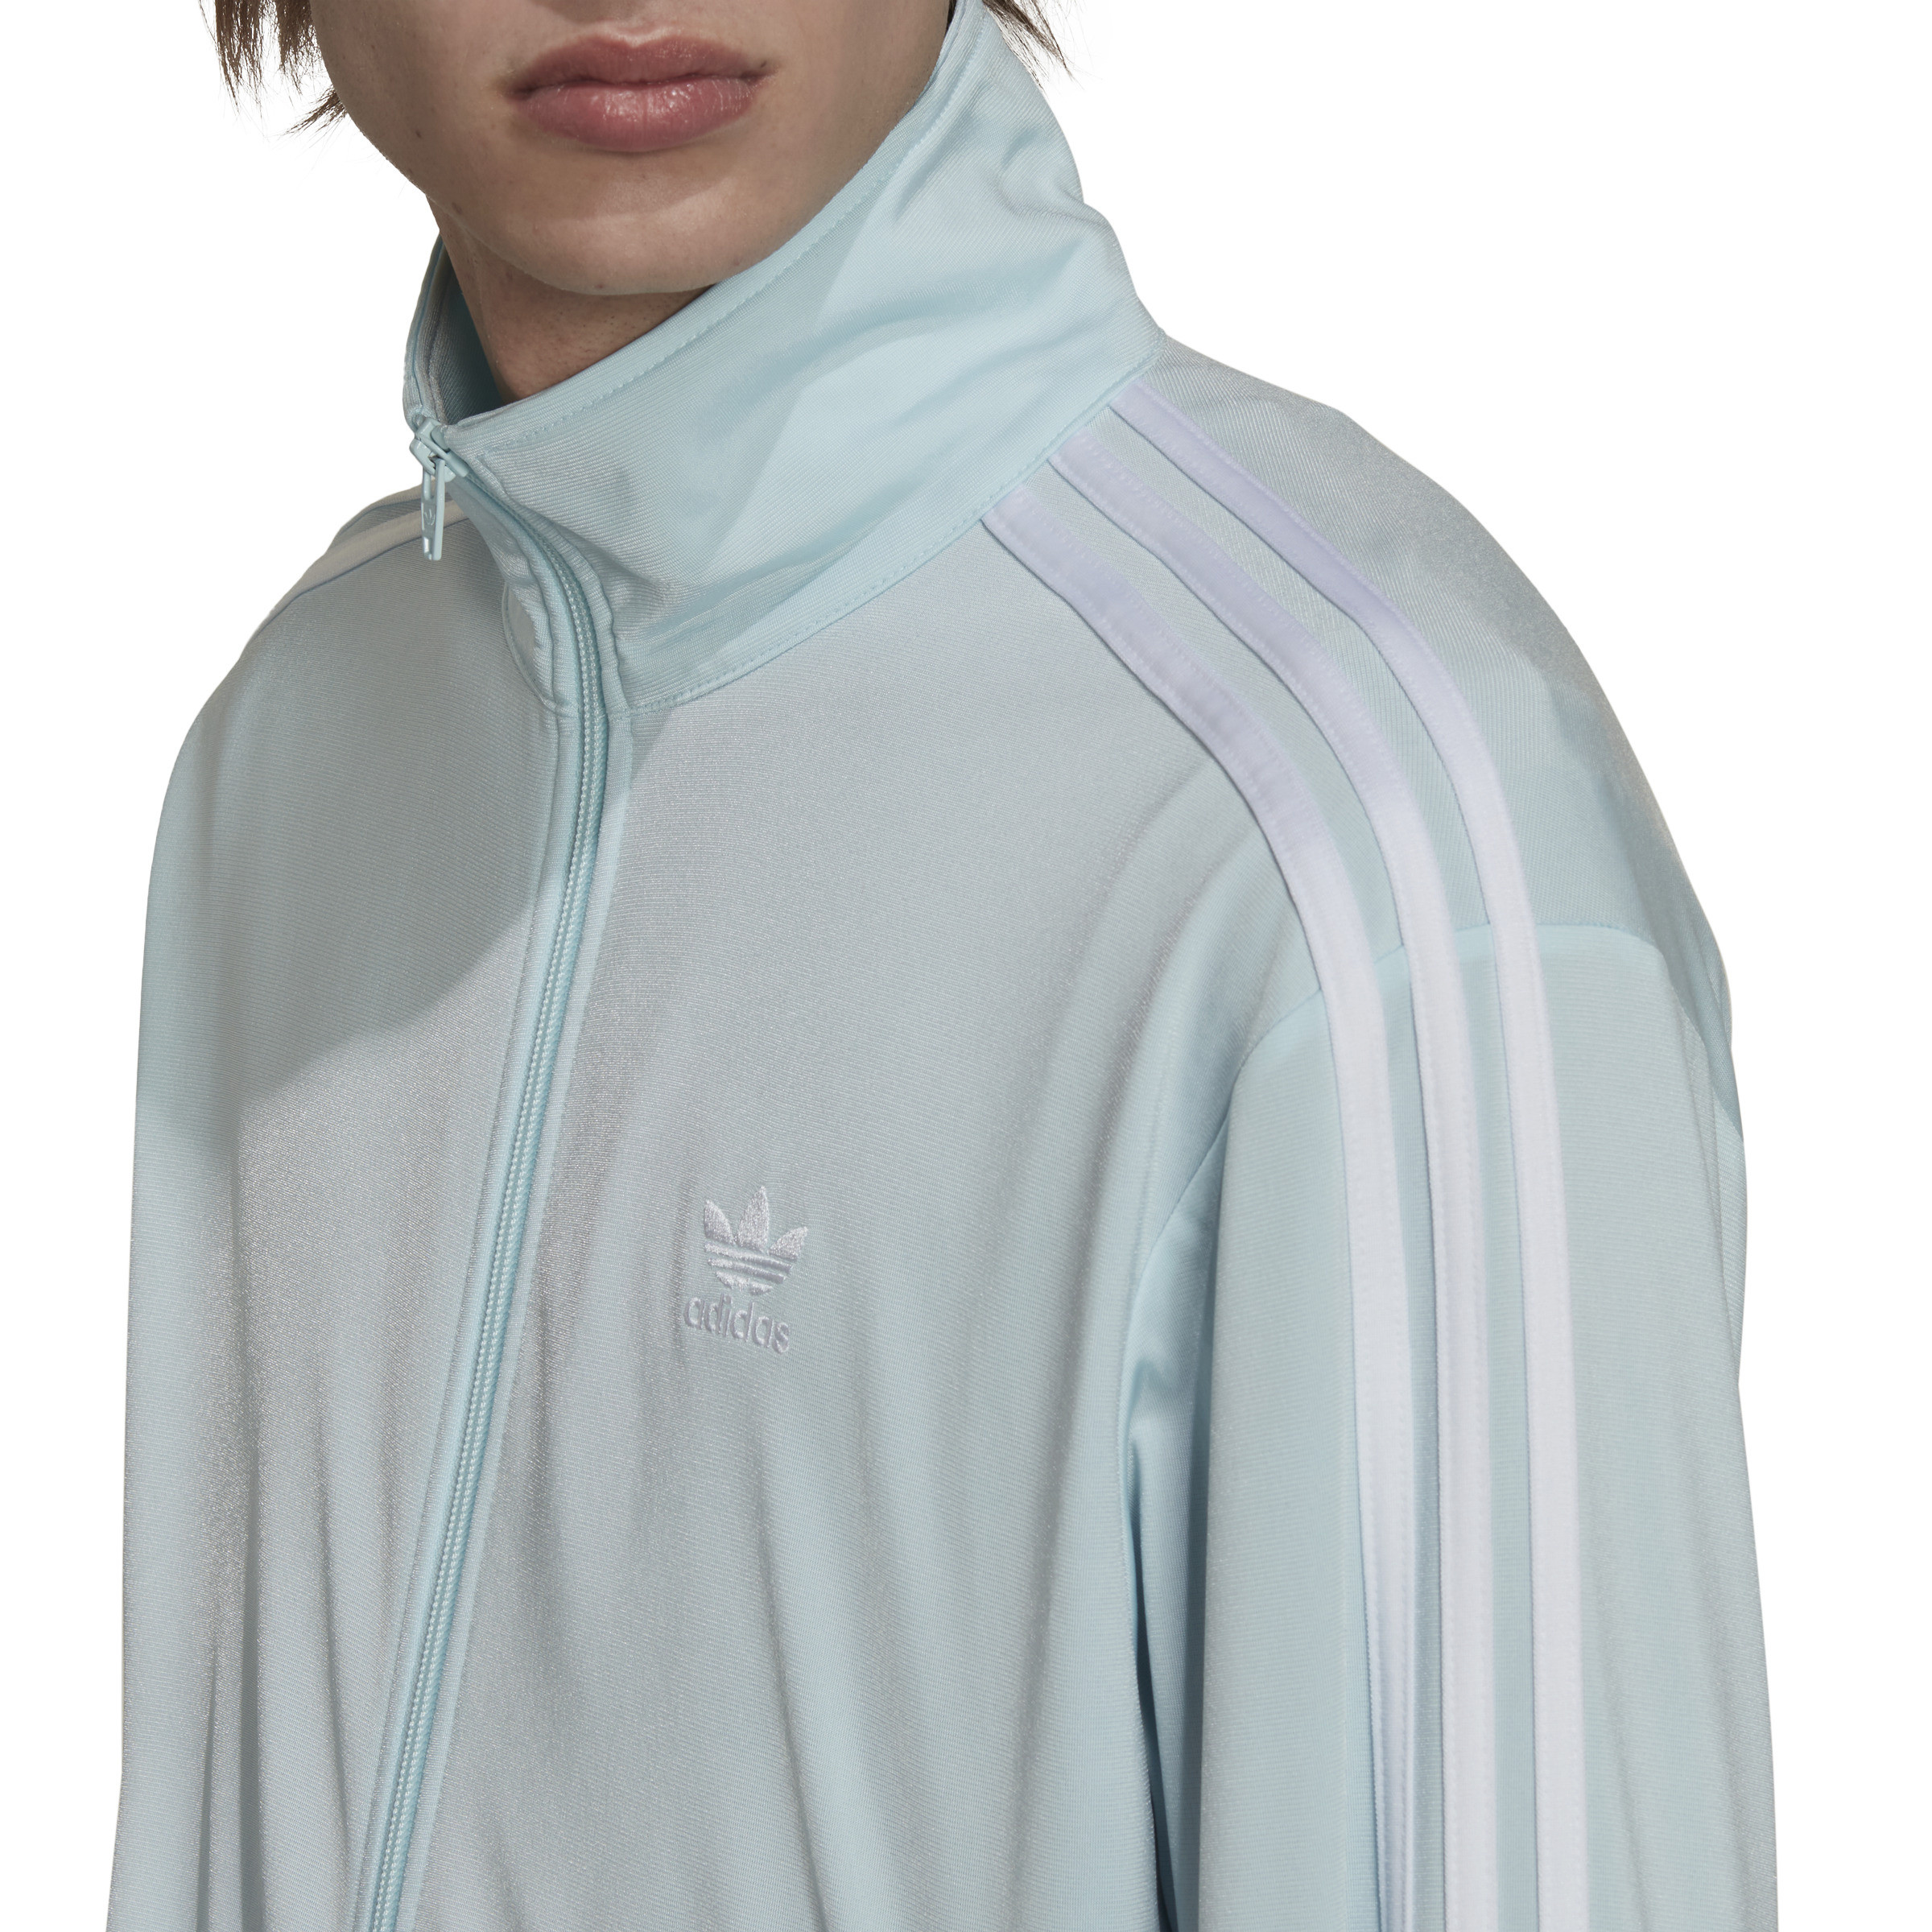 Adidas - Sweatshirt with logo, Light Blue, large image number 3